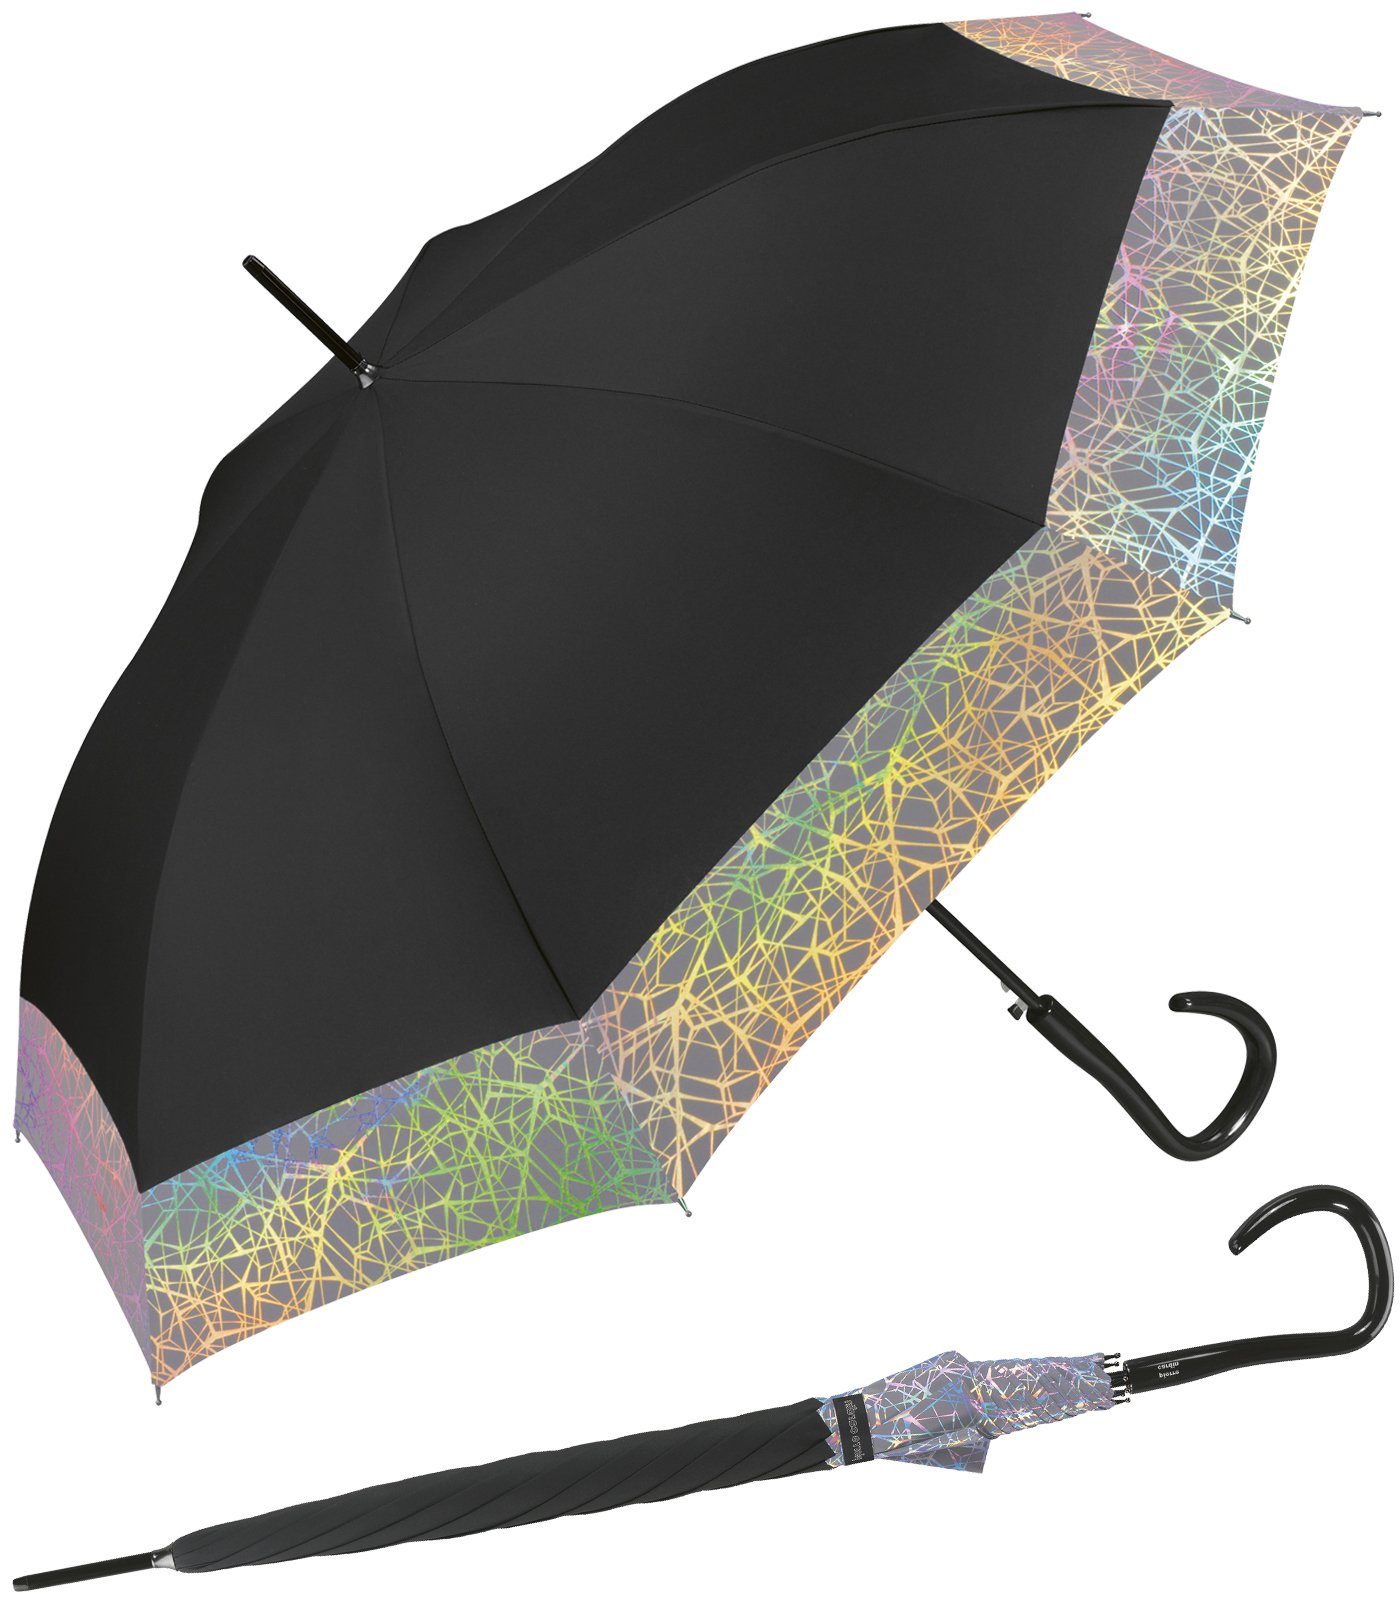 Pierre Cardin ganz den großer für schimmernde Borte Auf-Automatik, Damen-Regenschirm Langregenschirm mit Perlmut-Effekte großen Auftritt